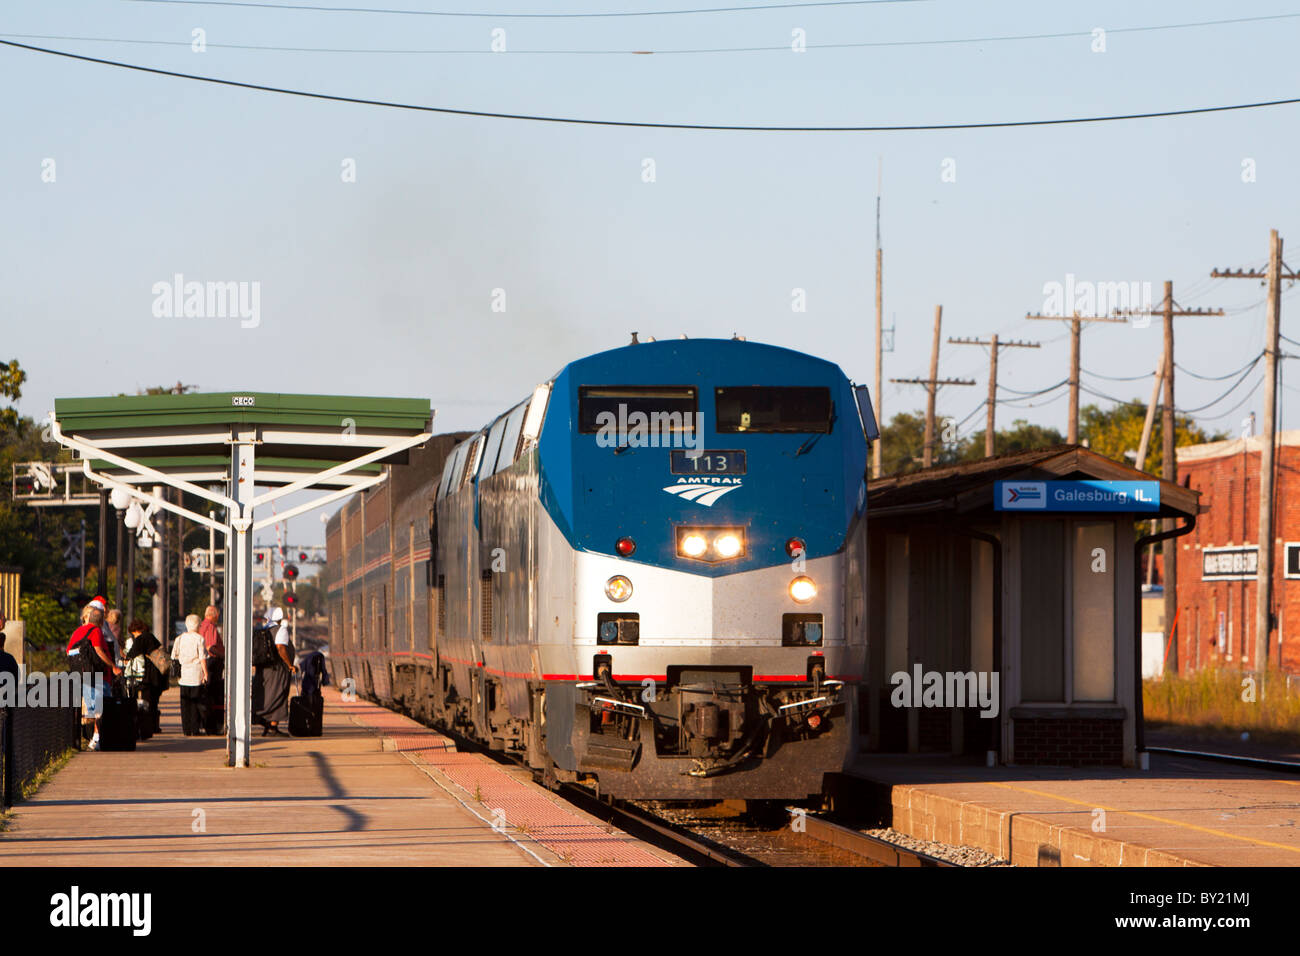 Una lunga distanza treno Amtrak rallenta fino a fermarsi in corrispondenza di Galesburg, il deposito. Foto Stock